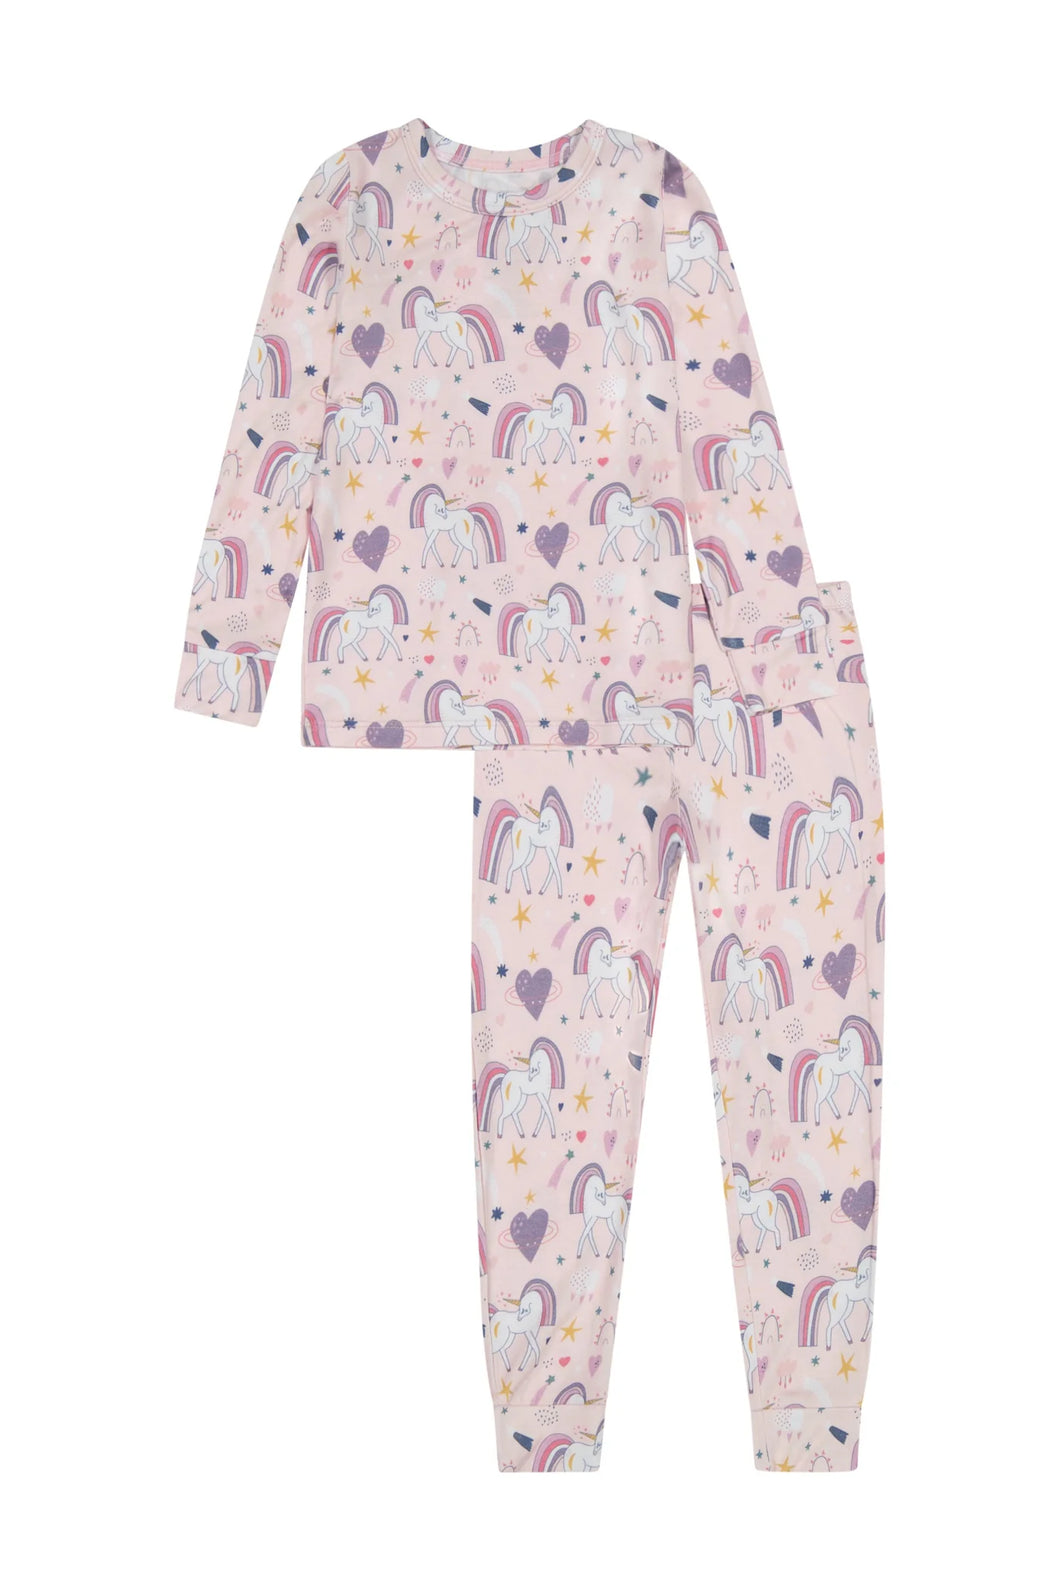 Kids Bamboo Pajamas - Rainbow Unicorn